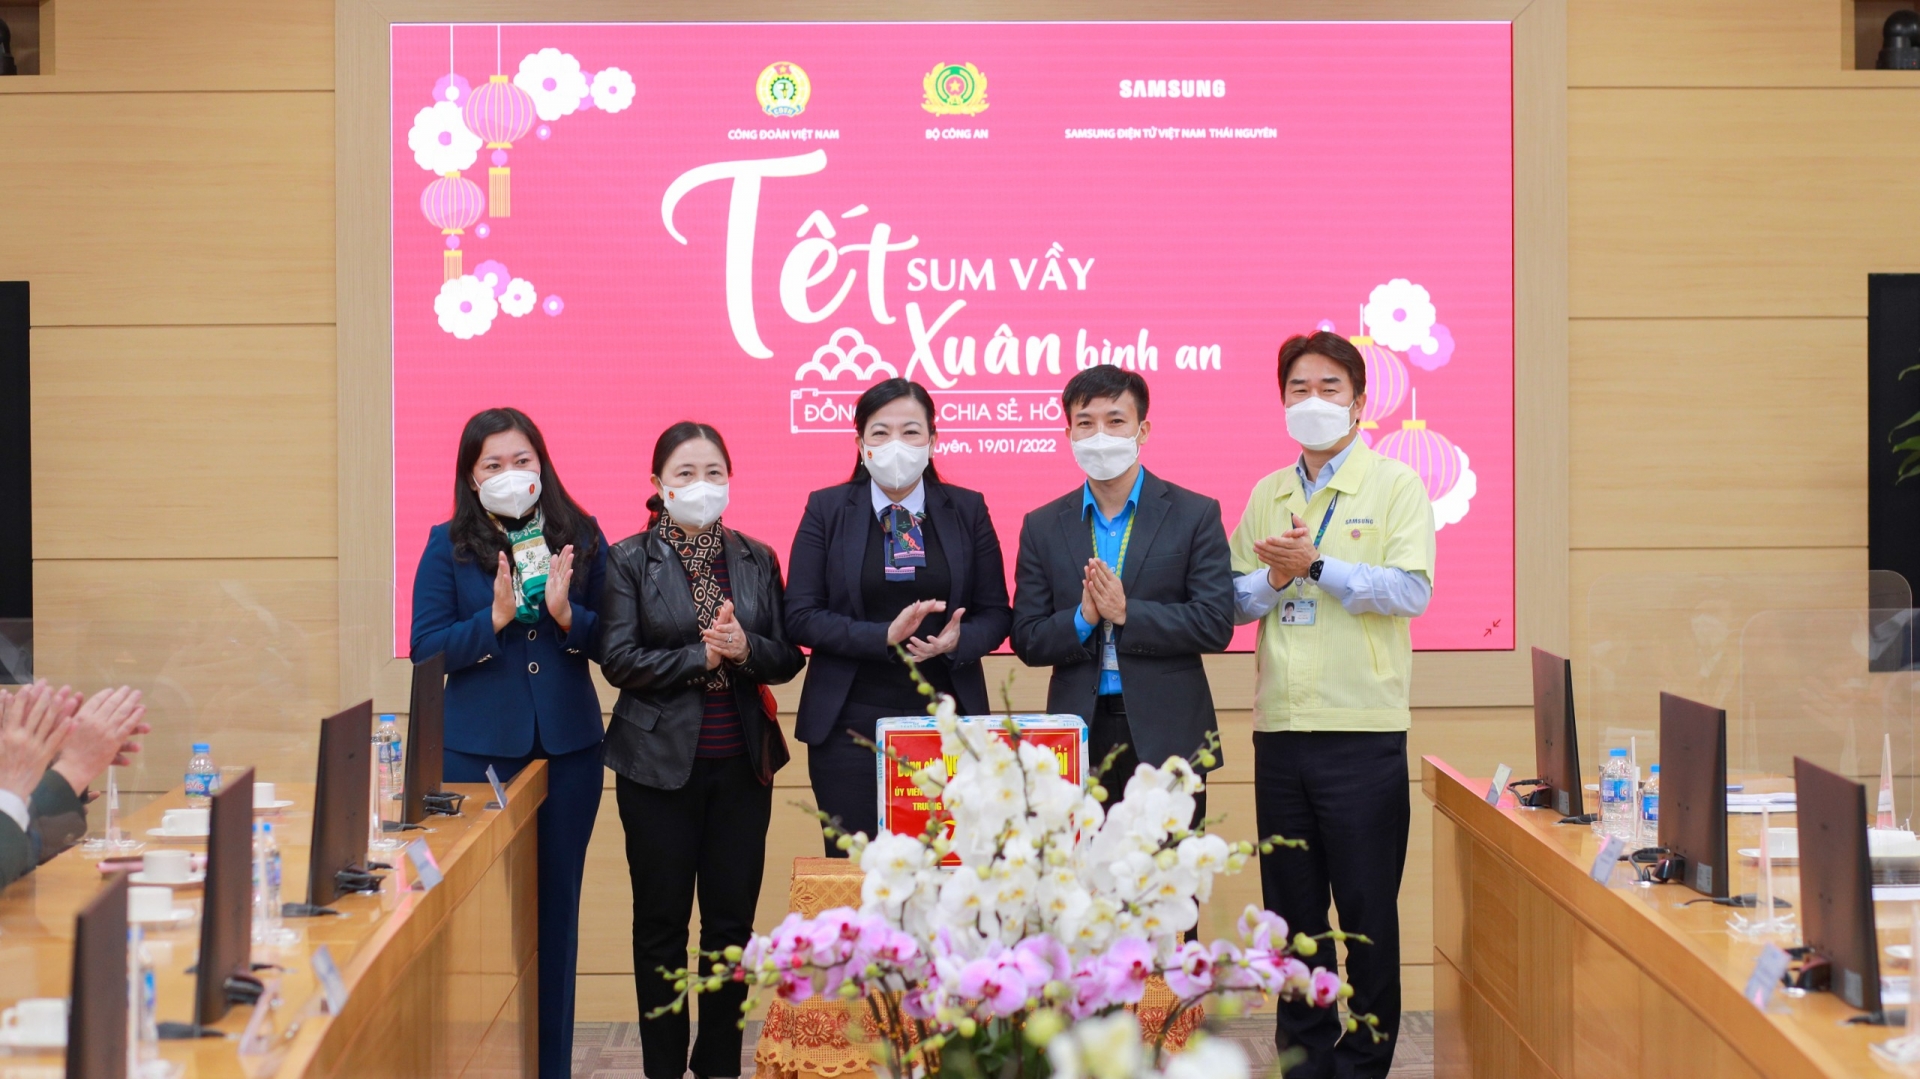 Đề nghị Samsung Việt Nam tạo điều kiện để lao động nữ xây dựng hạnh phúc gia đình